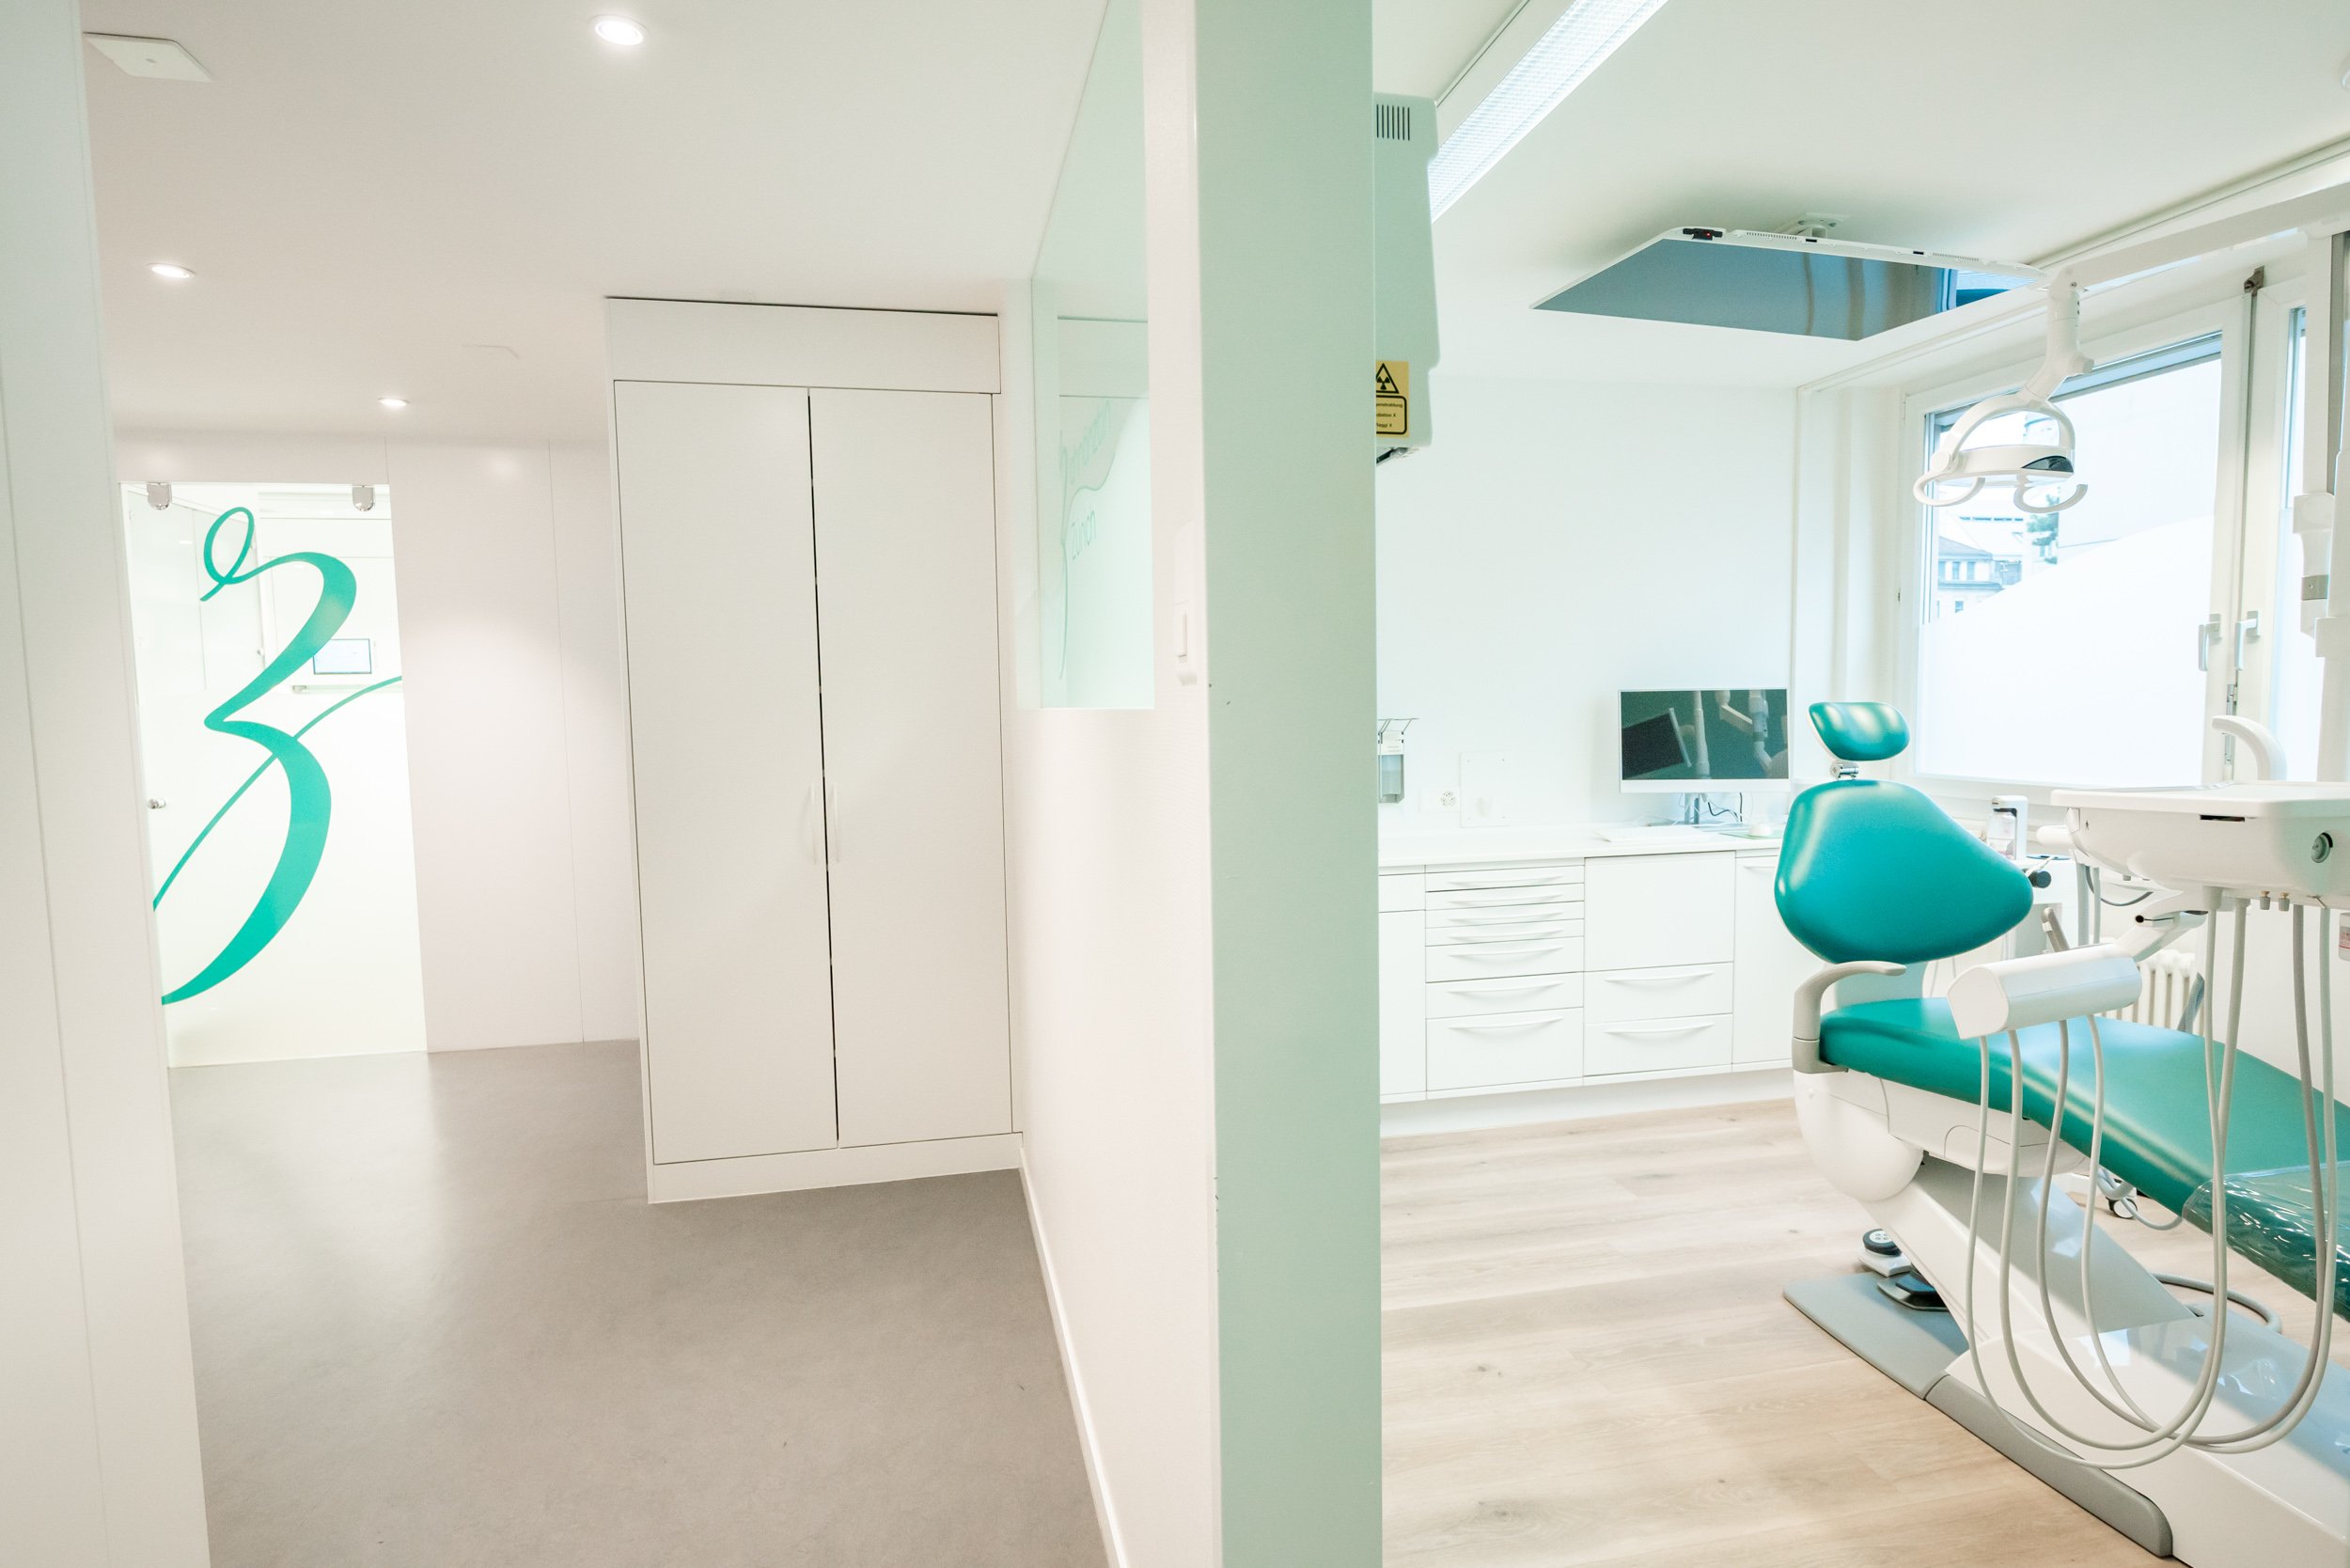 Zahnärztin Zürich - Zahnarztpraxis beim HB Zürich Schweizergasse 8 - 8001 Zürich - Telefon 044 221 41 41